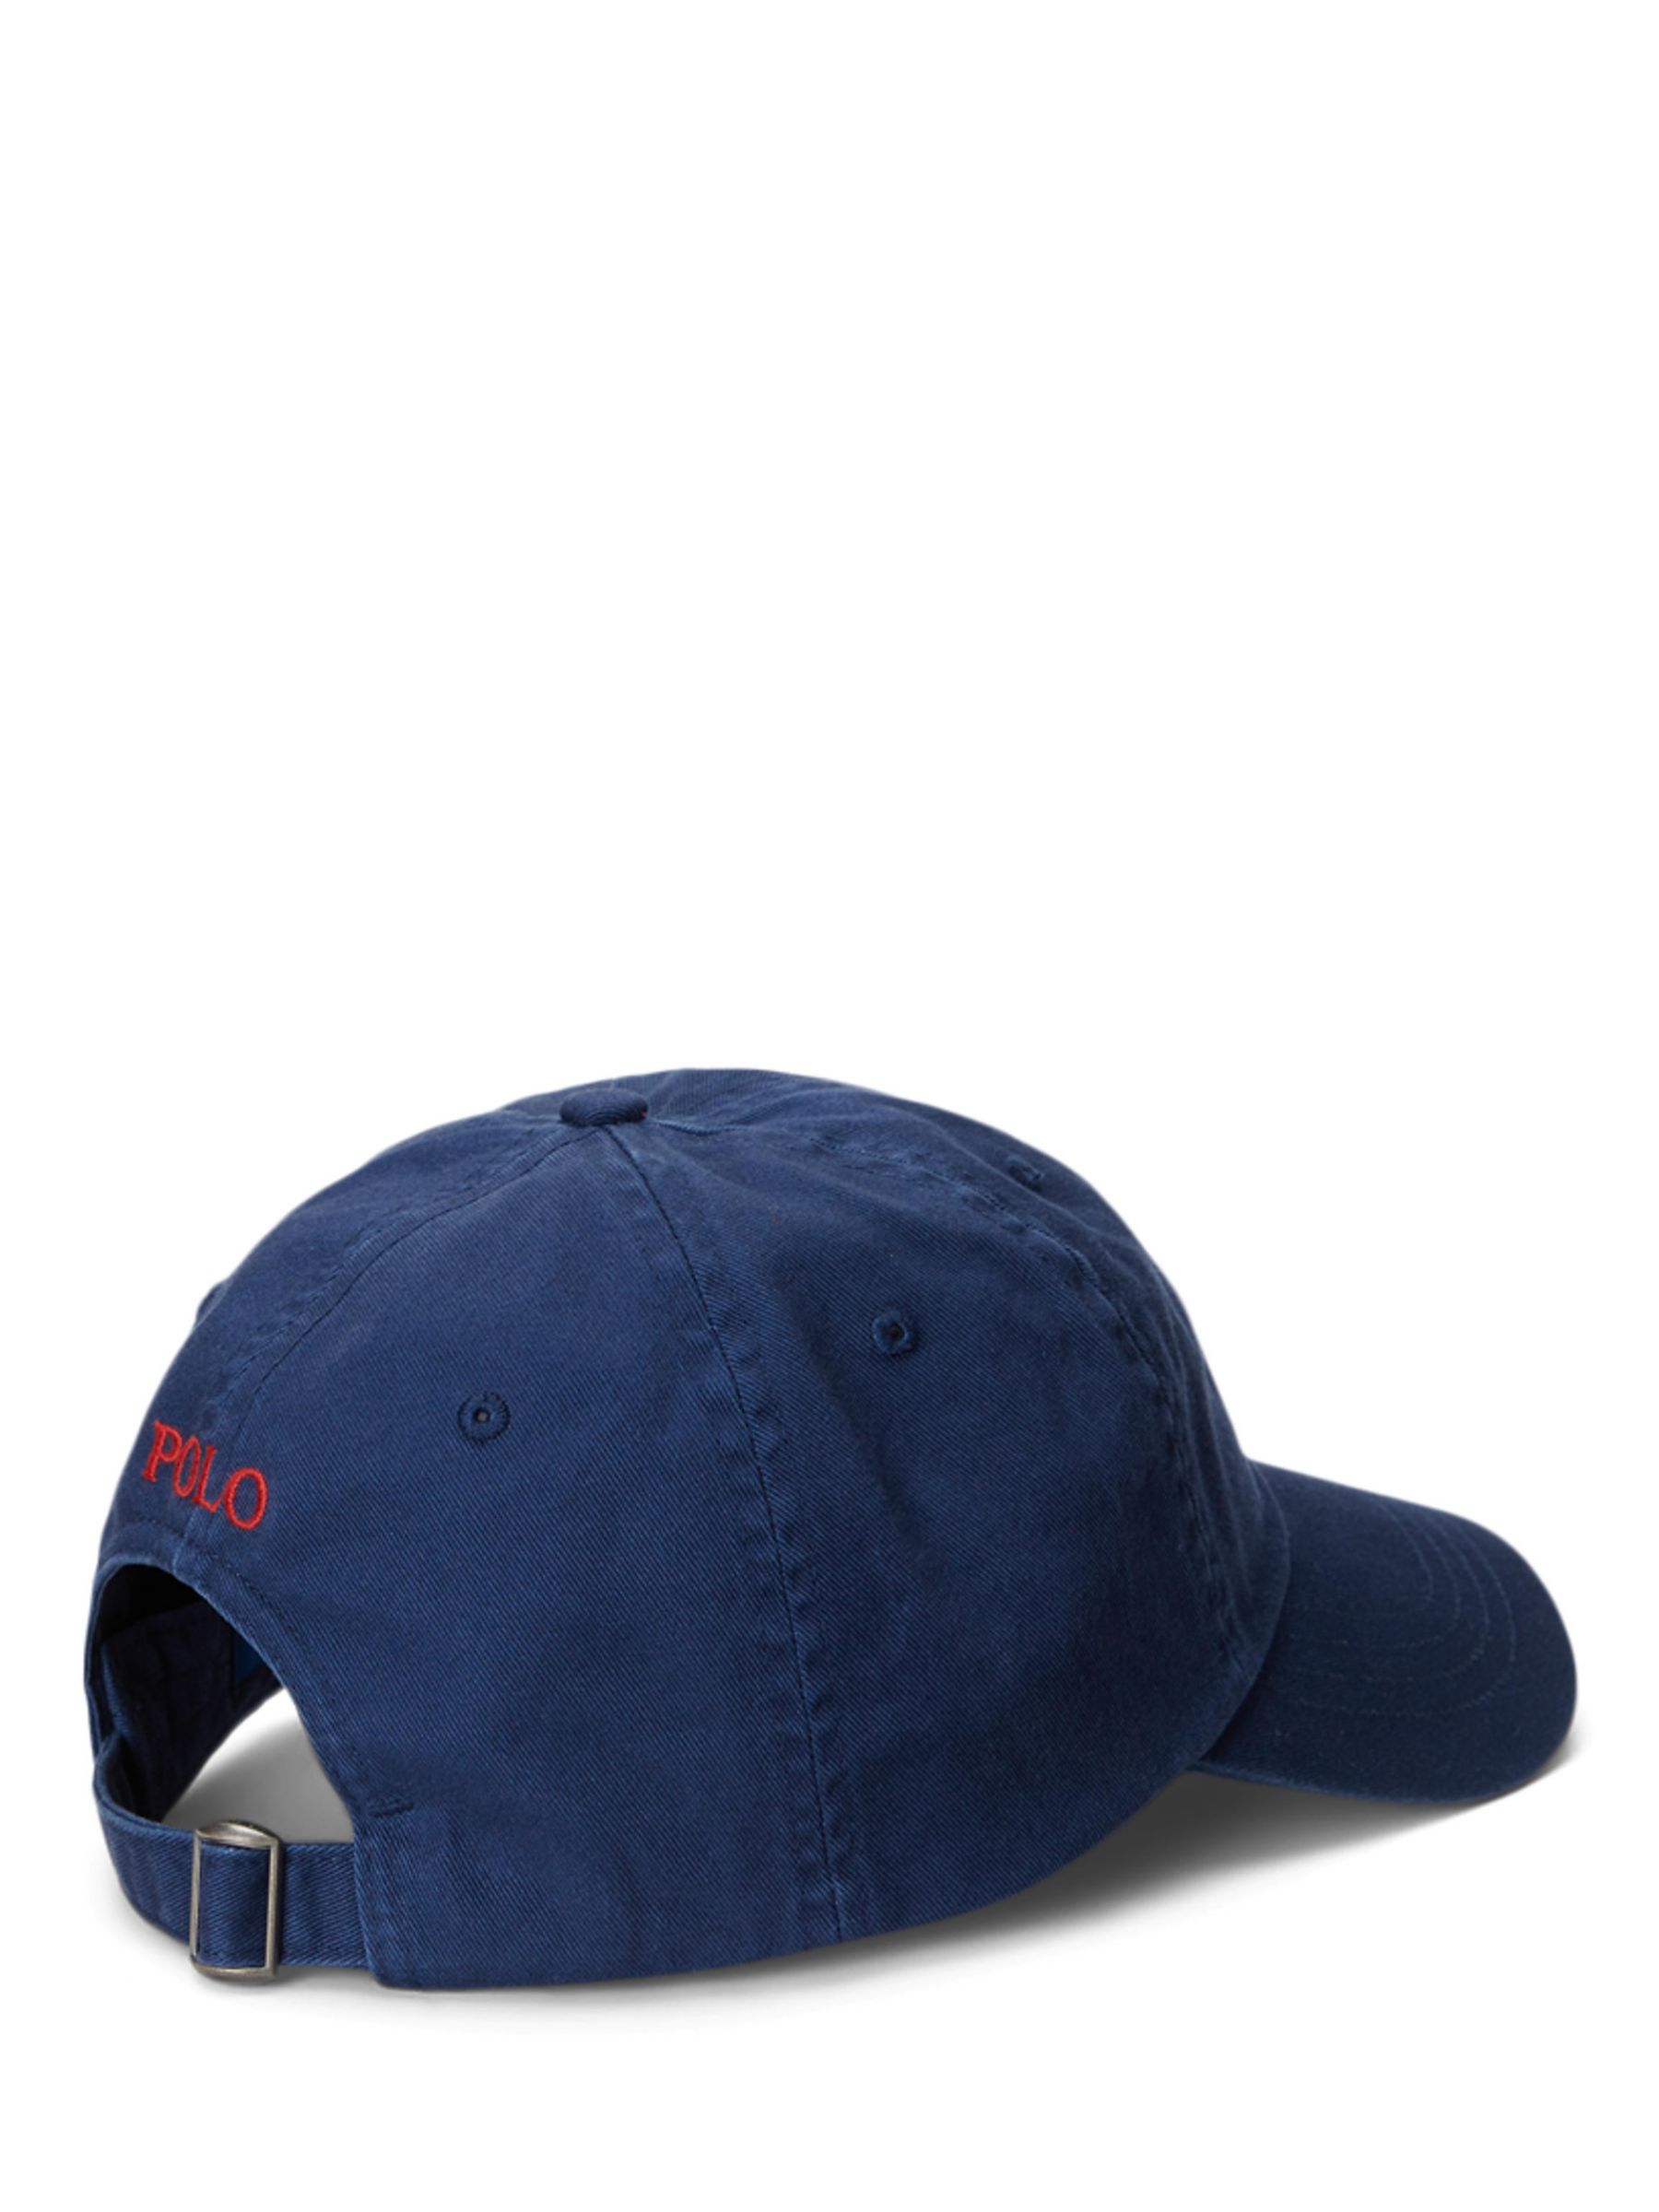 ralph lauren navy cap